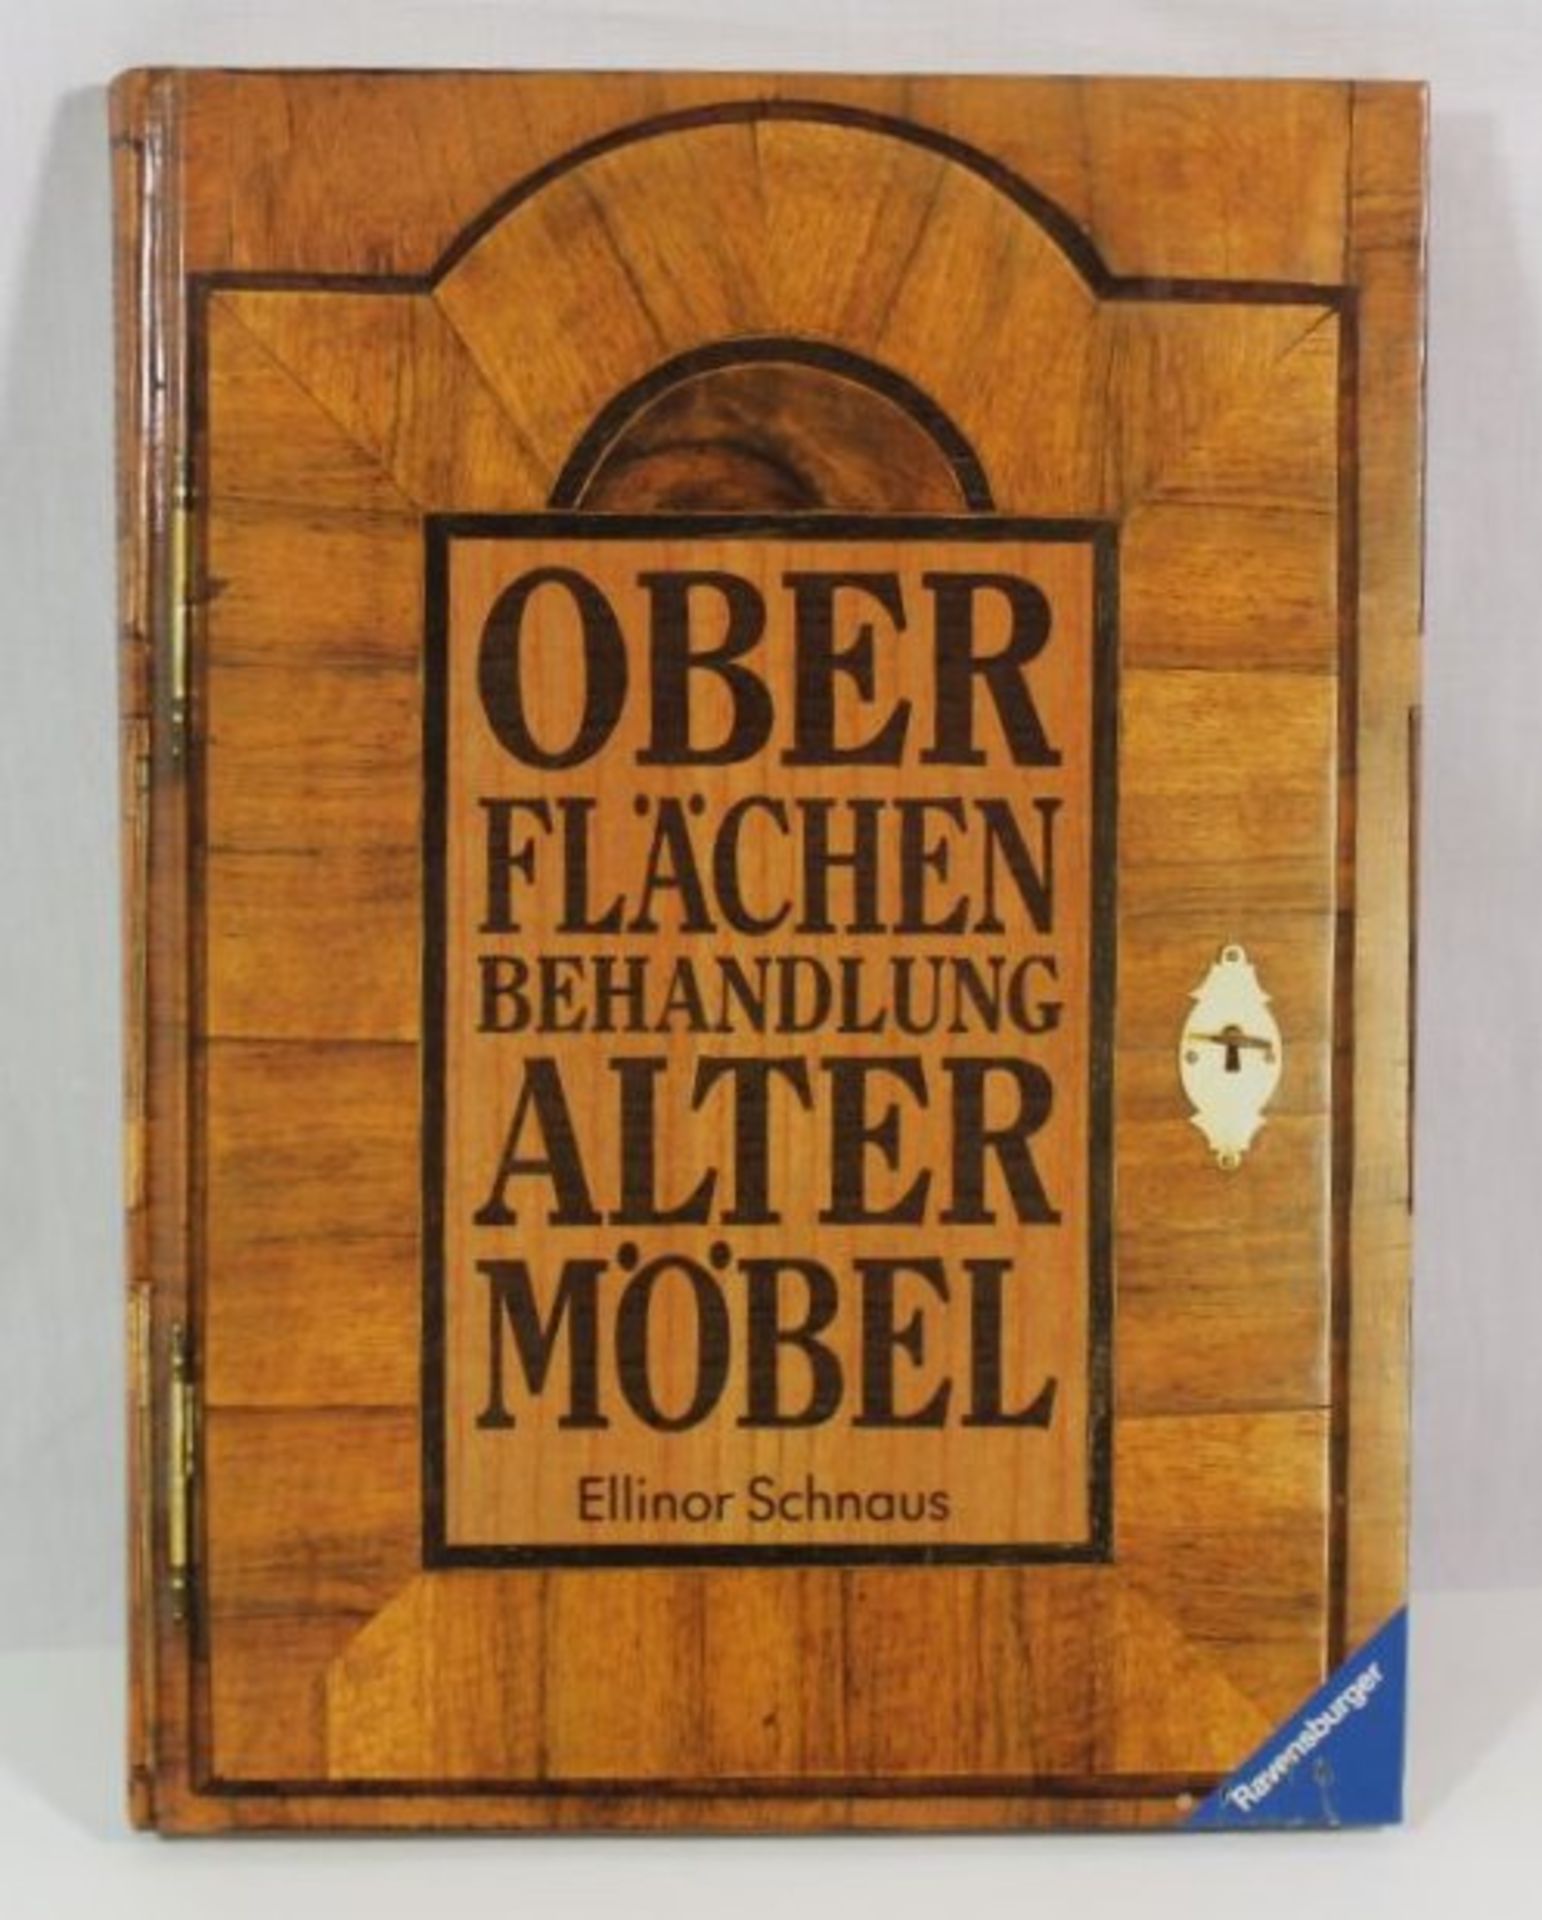 Oberflächenbehandlung alter Möbel, Ellinor Schnaus, 19